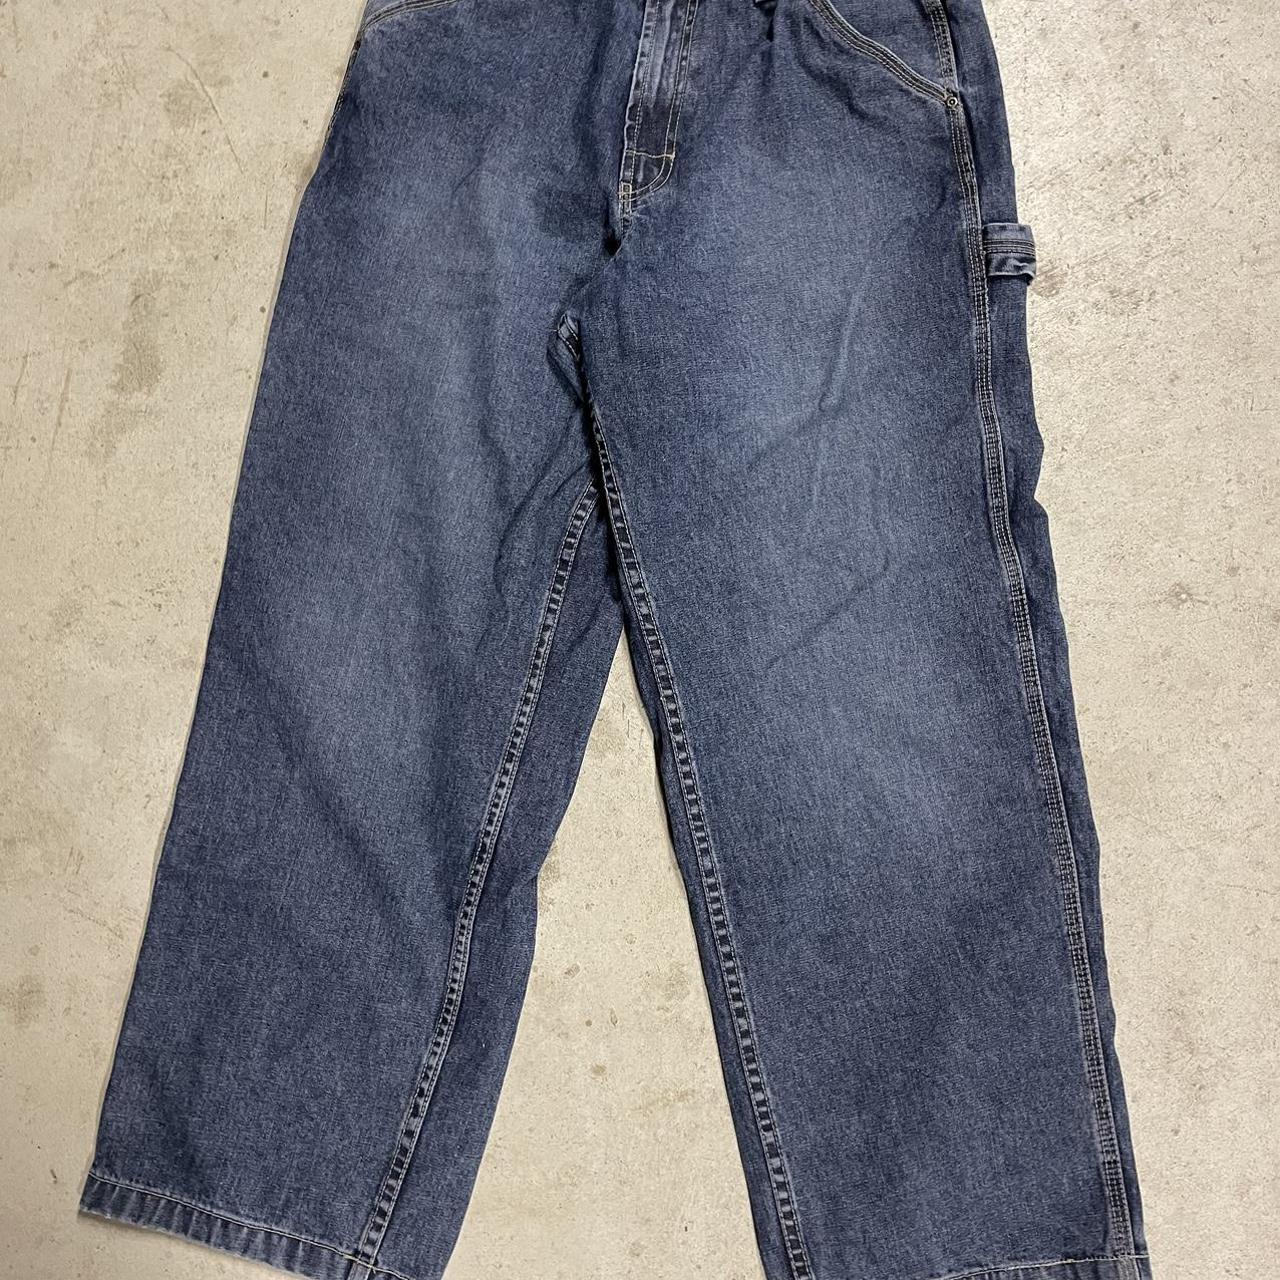 🚨NOT JNCOS🚨 BAGGY FIT Denim Jeans 30x30 - Depop